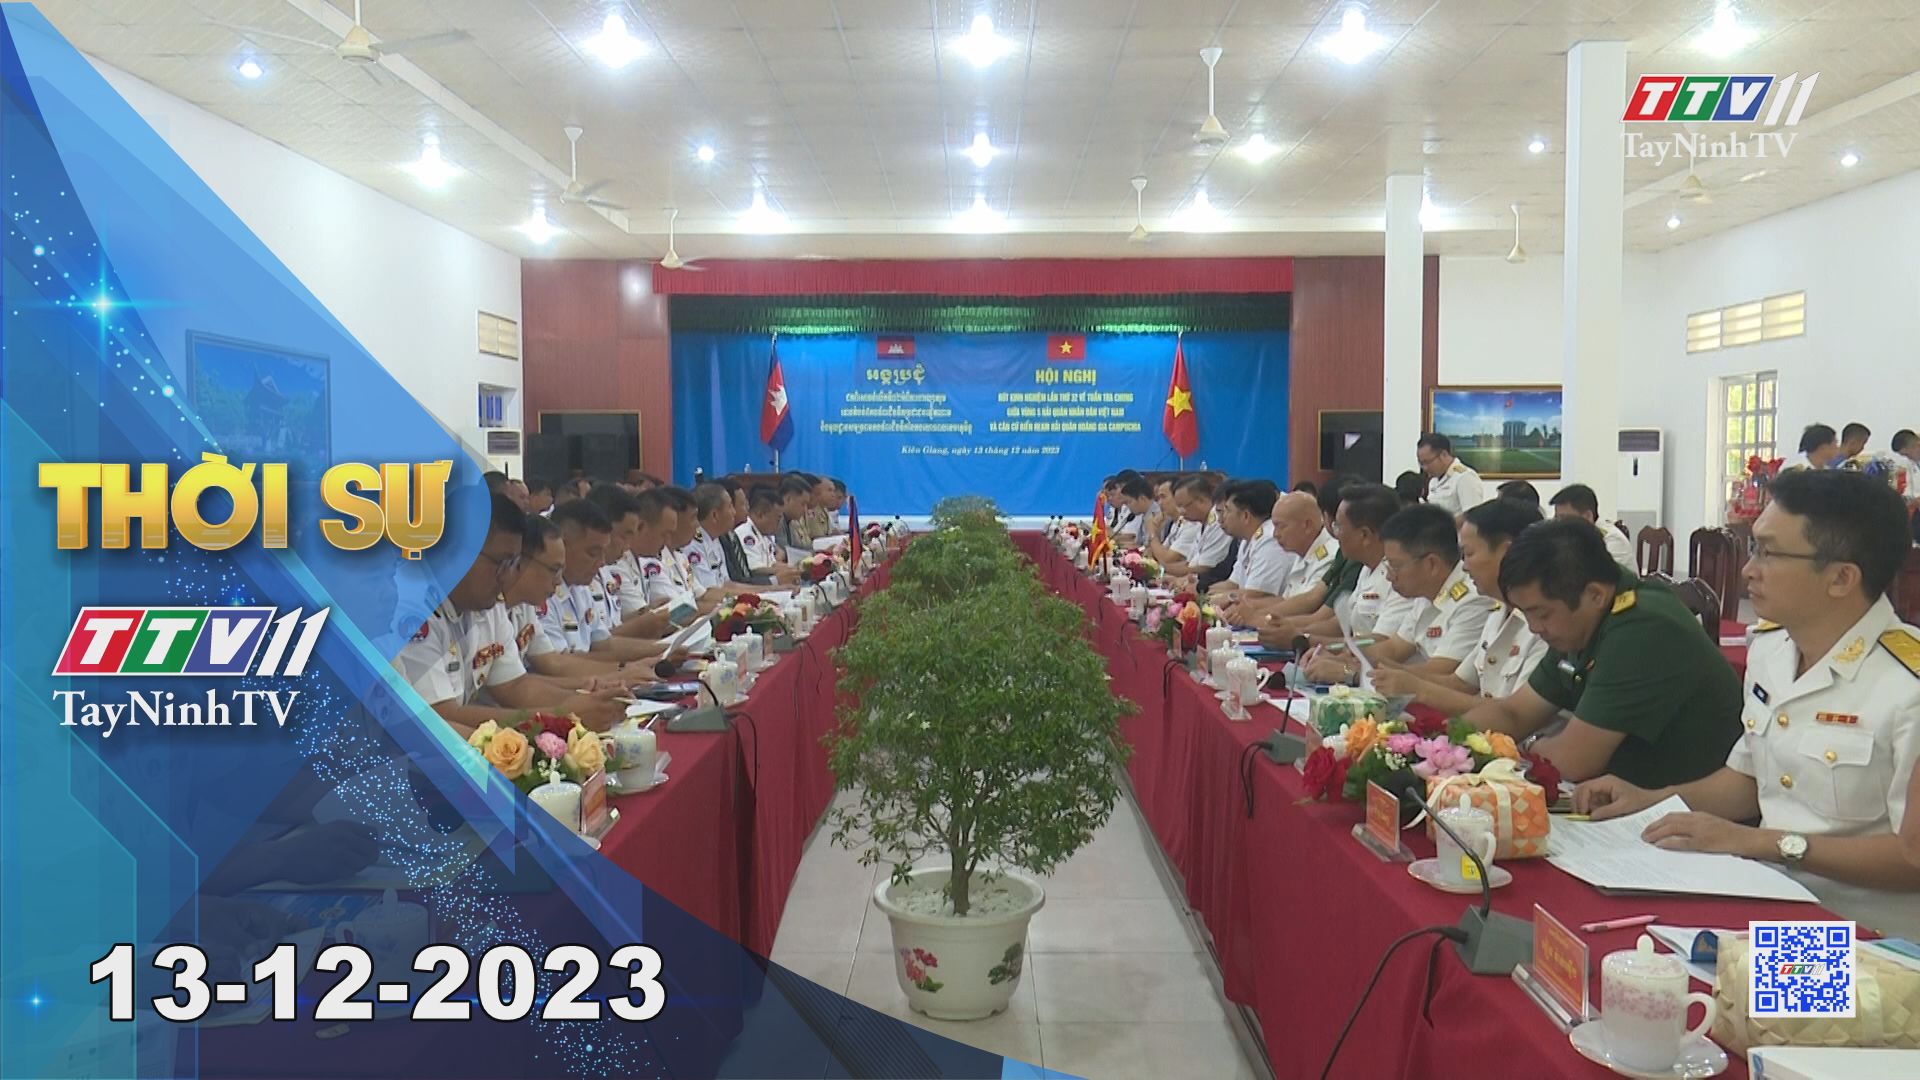 Thời sự Tây Ninh 13-12-2023 | Tin tức hôm nay | TayNinhTV